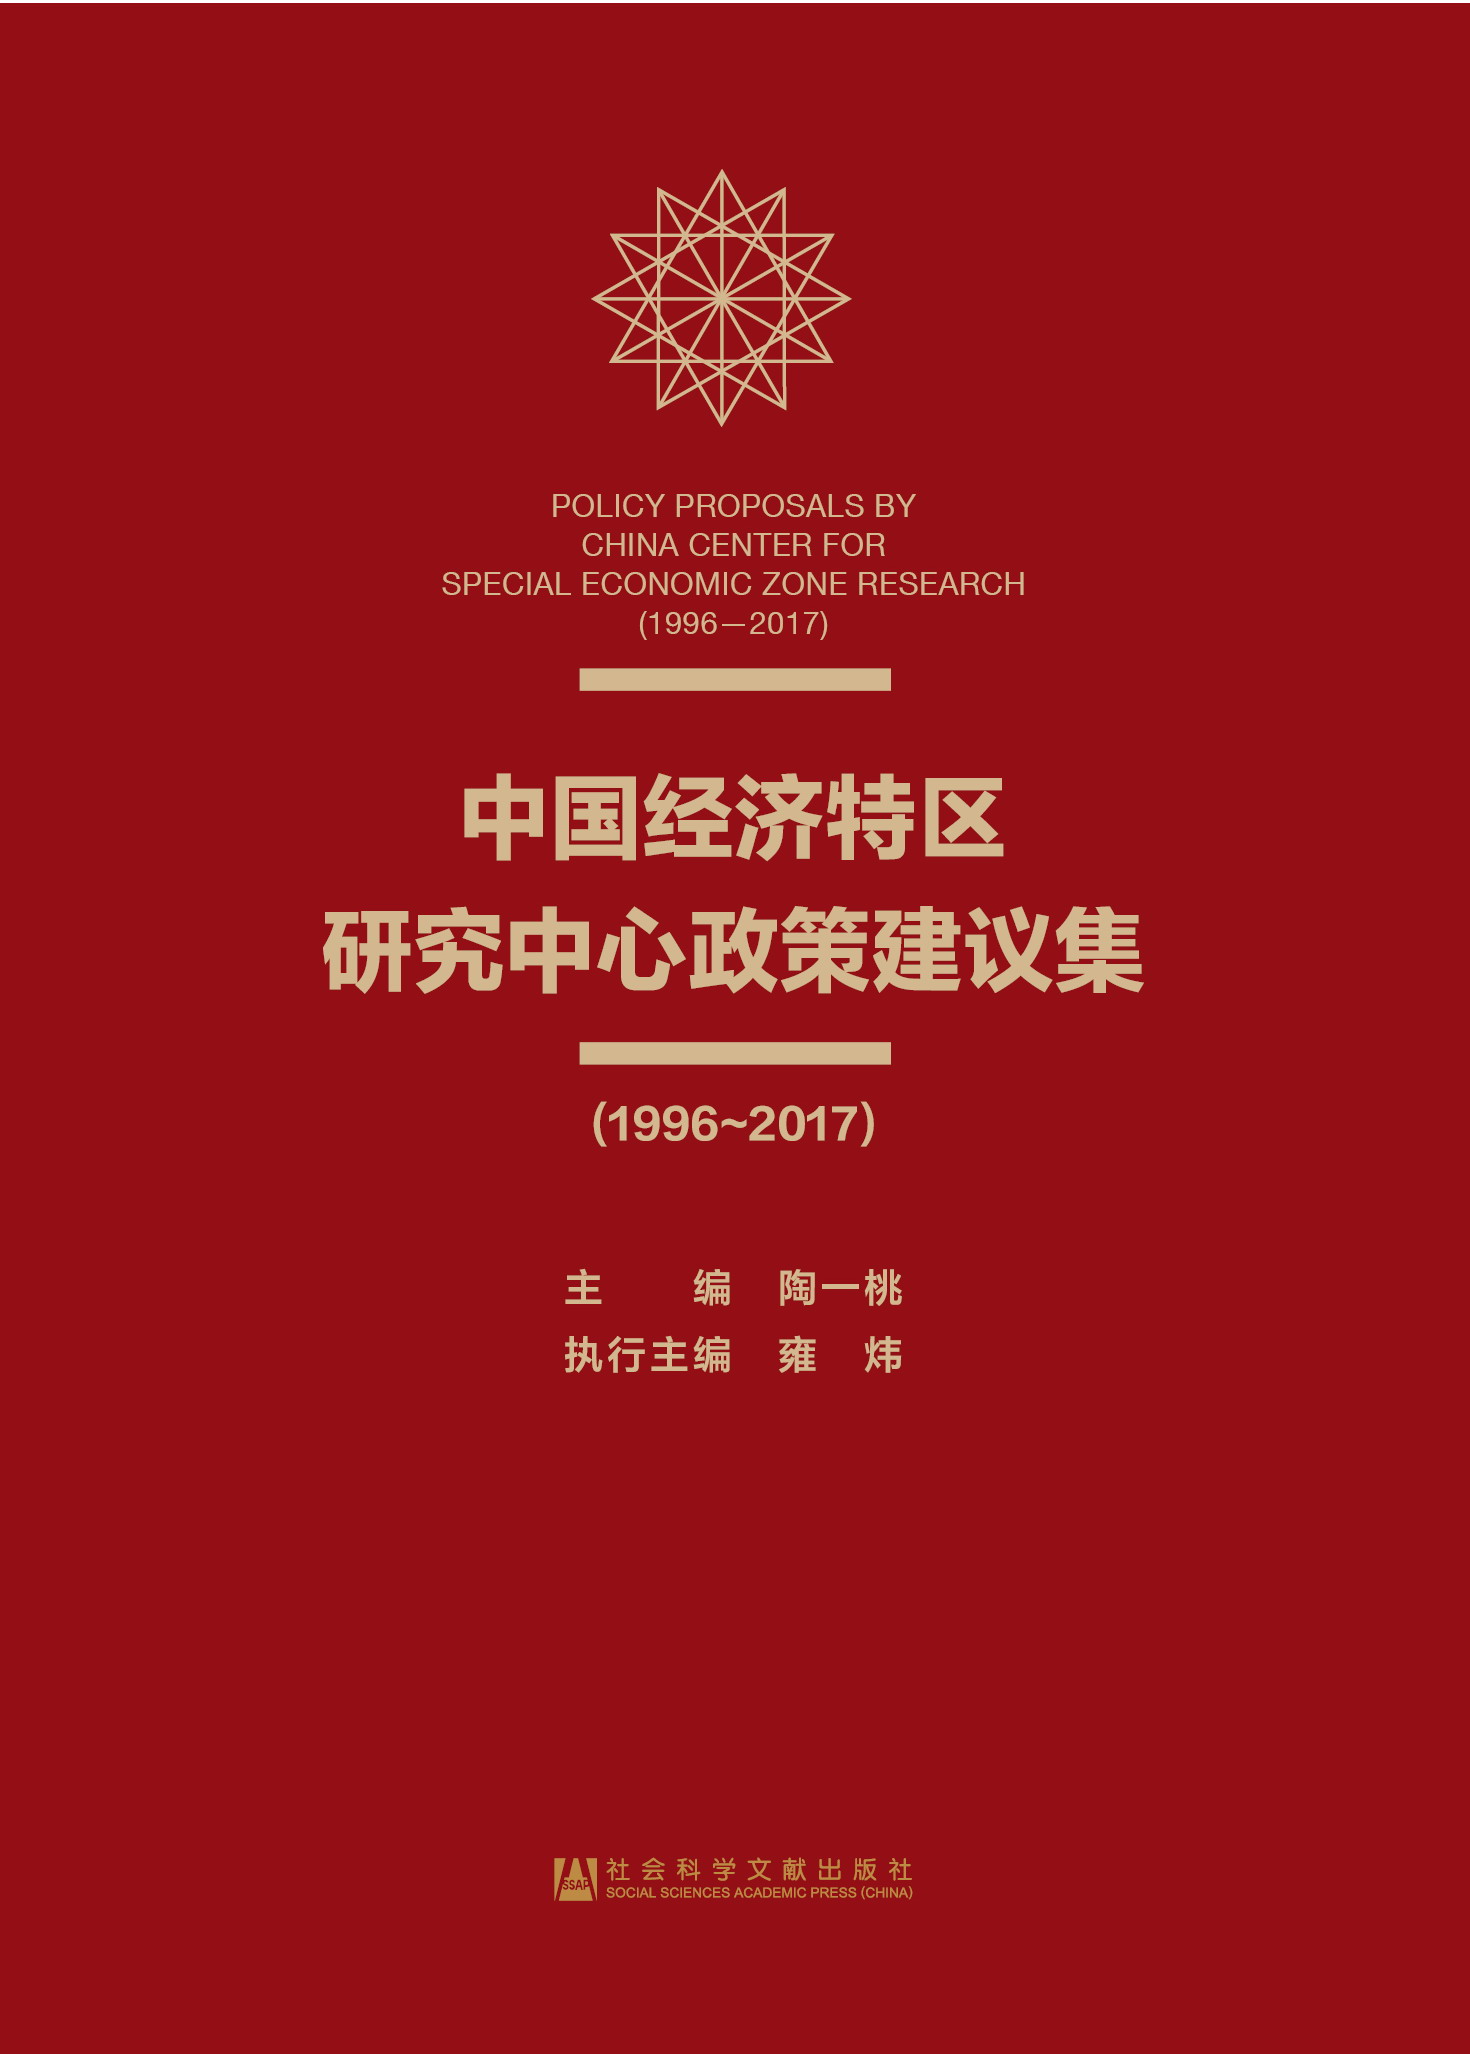 中国经济特区研究中心政策建议集(1996~2017)